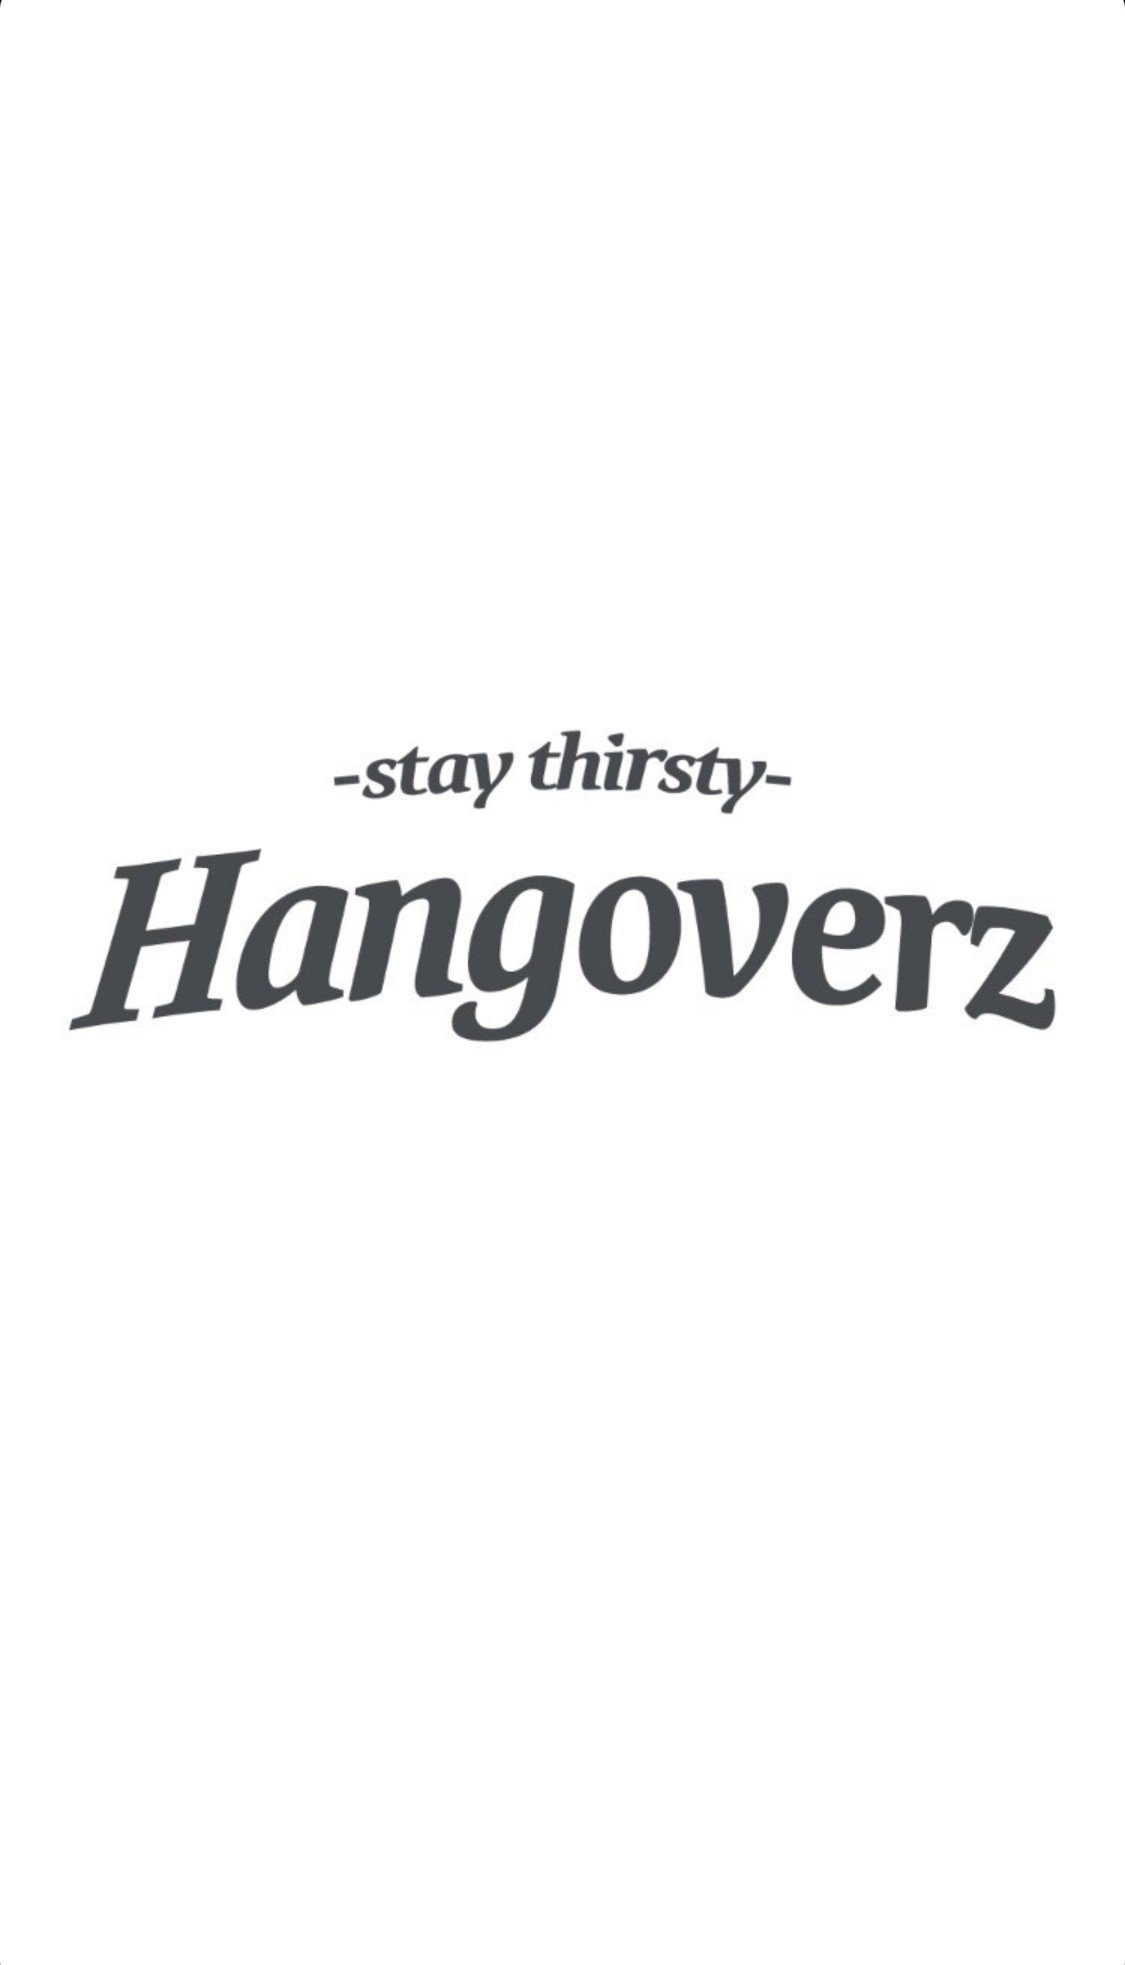 hangoverz